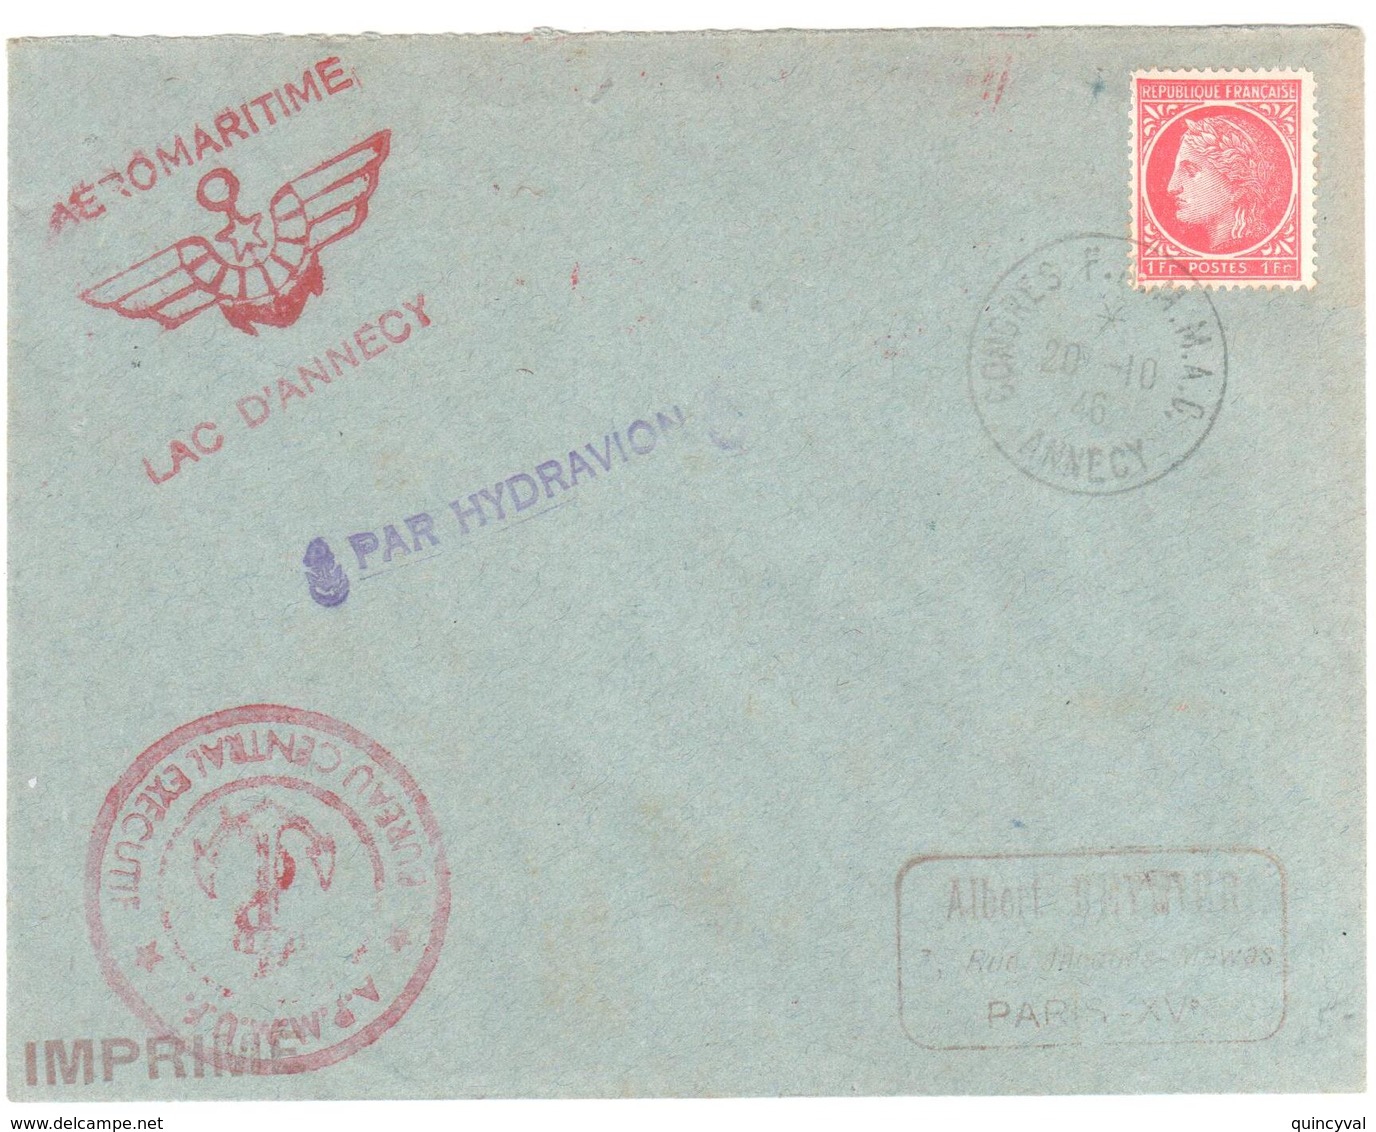 ANNECY Congrès F A M M A C 20 10 1946 Imprimé 1F Mazelin Yv 676 Marques AERO MARITIME Lac D'Annecy  PAR HYDRAVION - 1927-1959 Covers & Documents